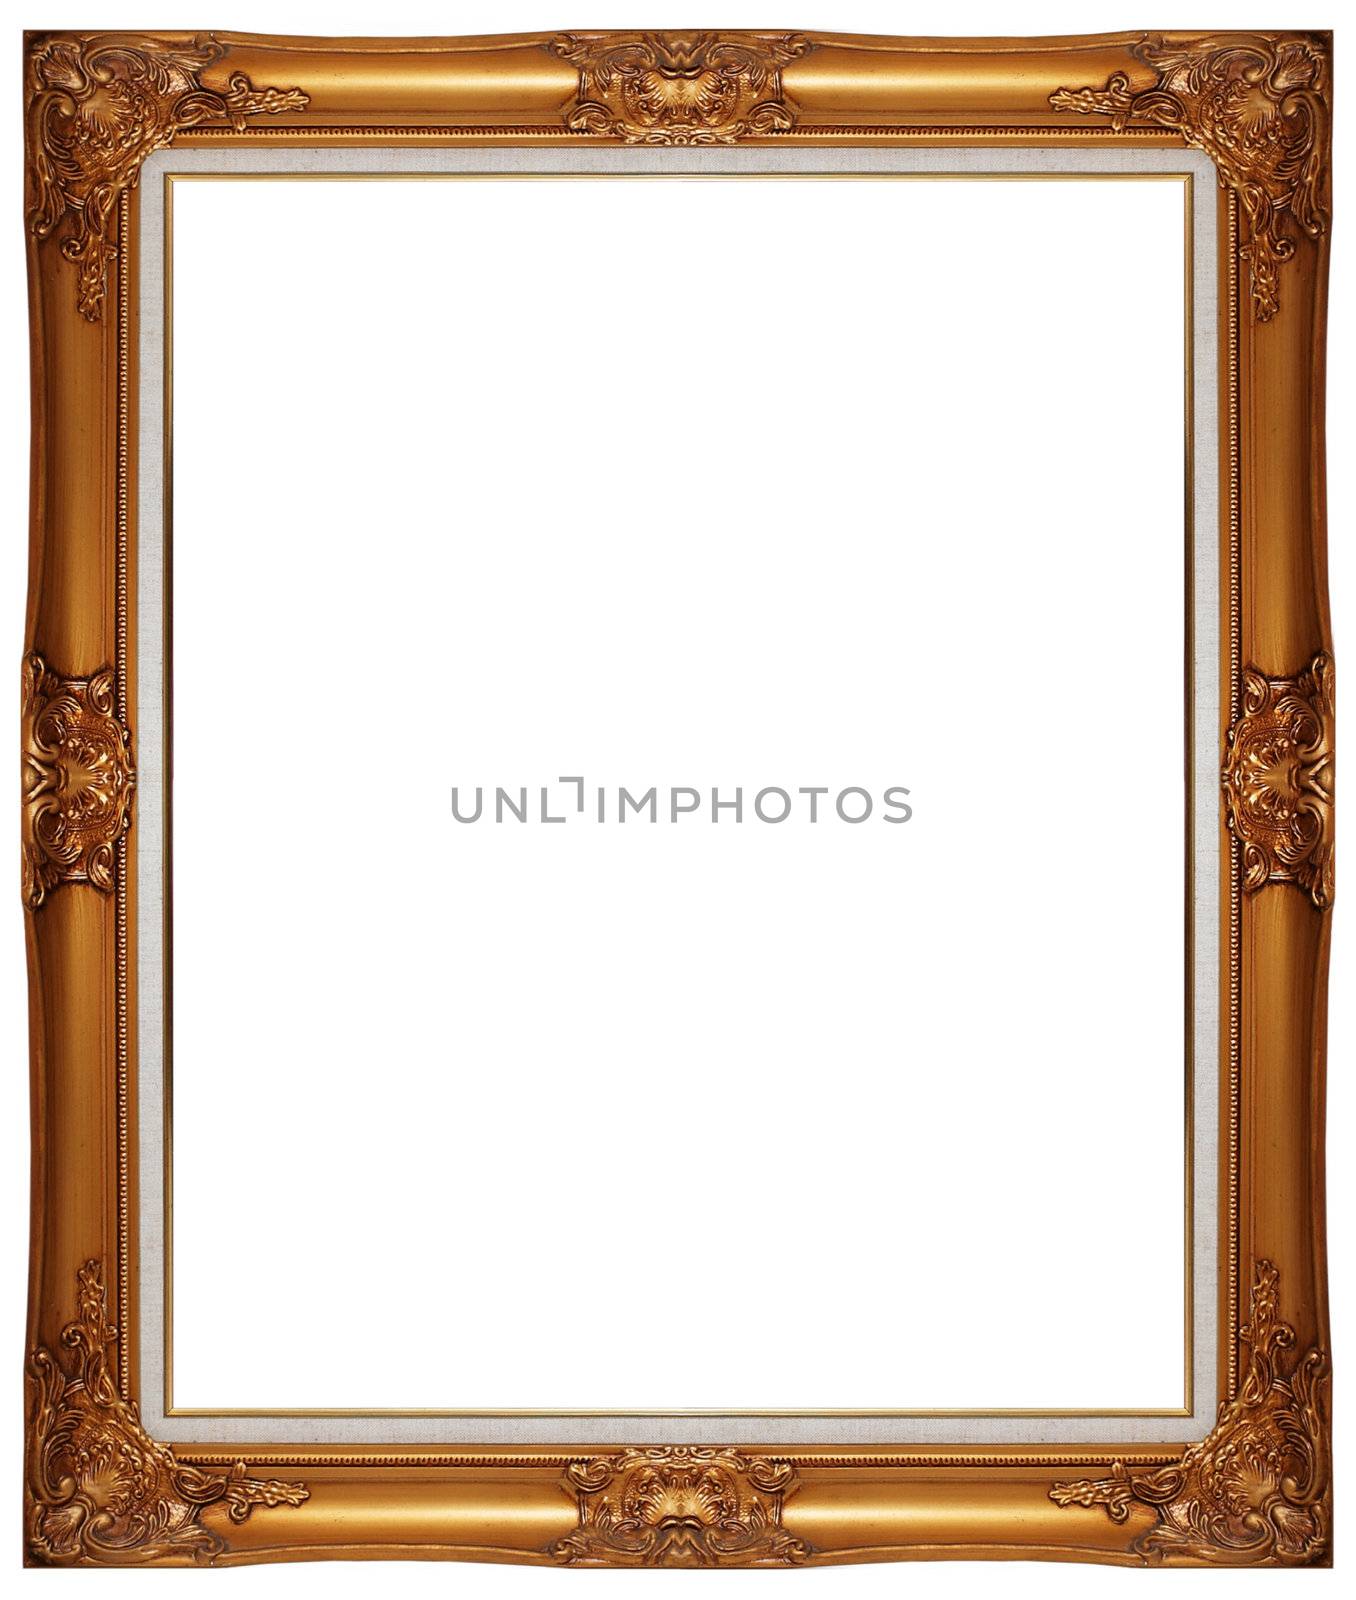 photo frame isolated on white background